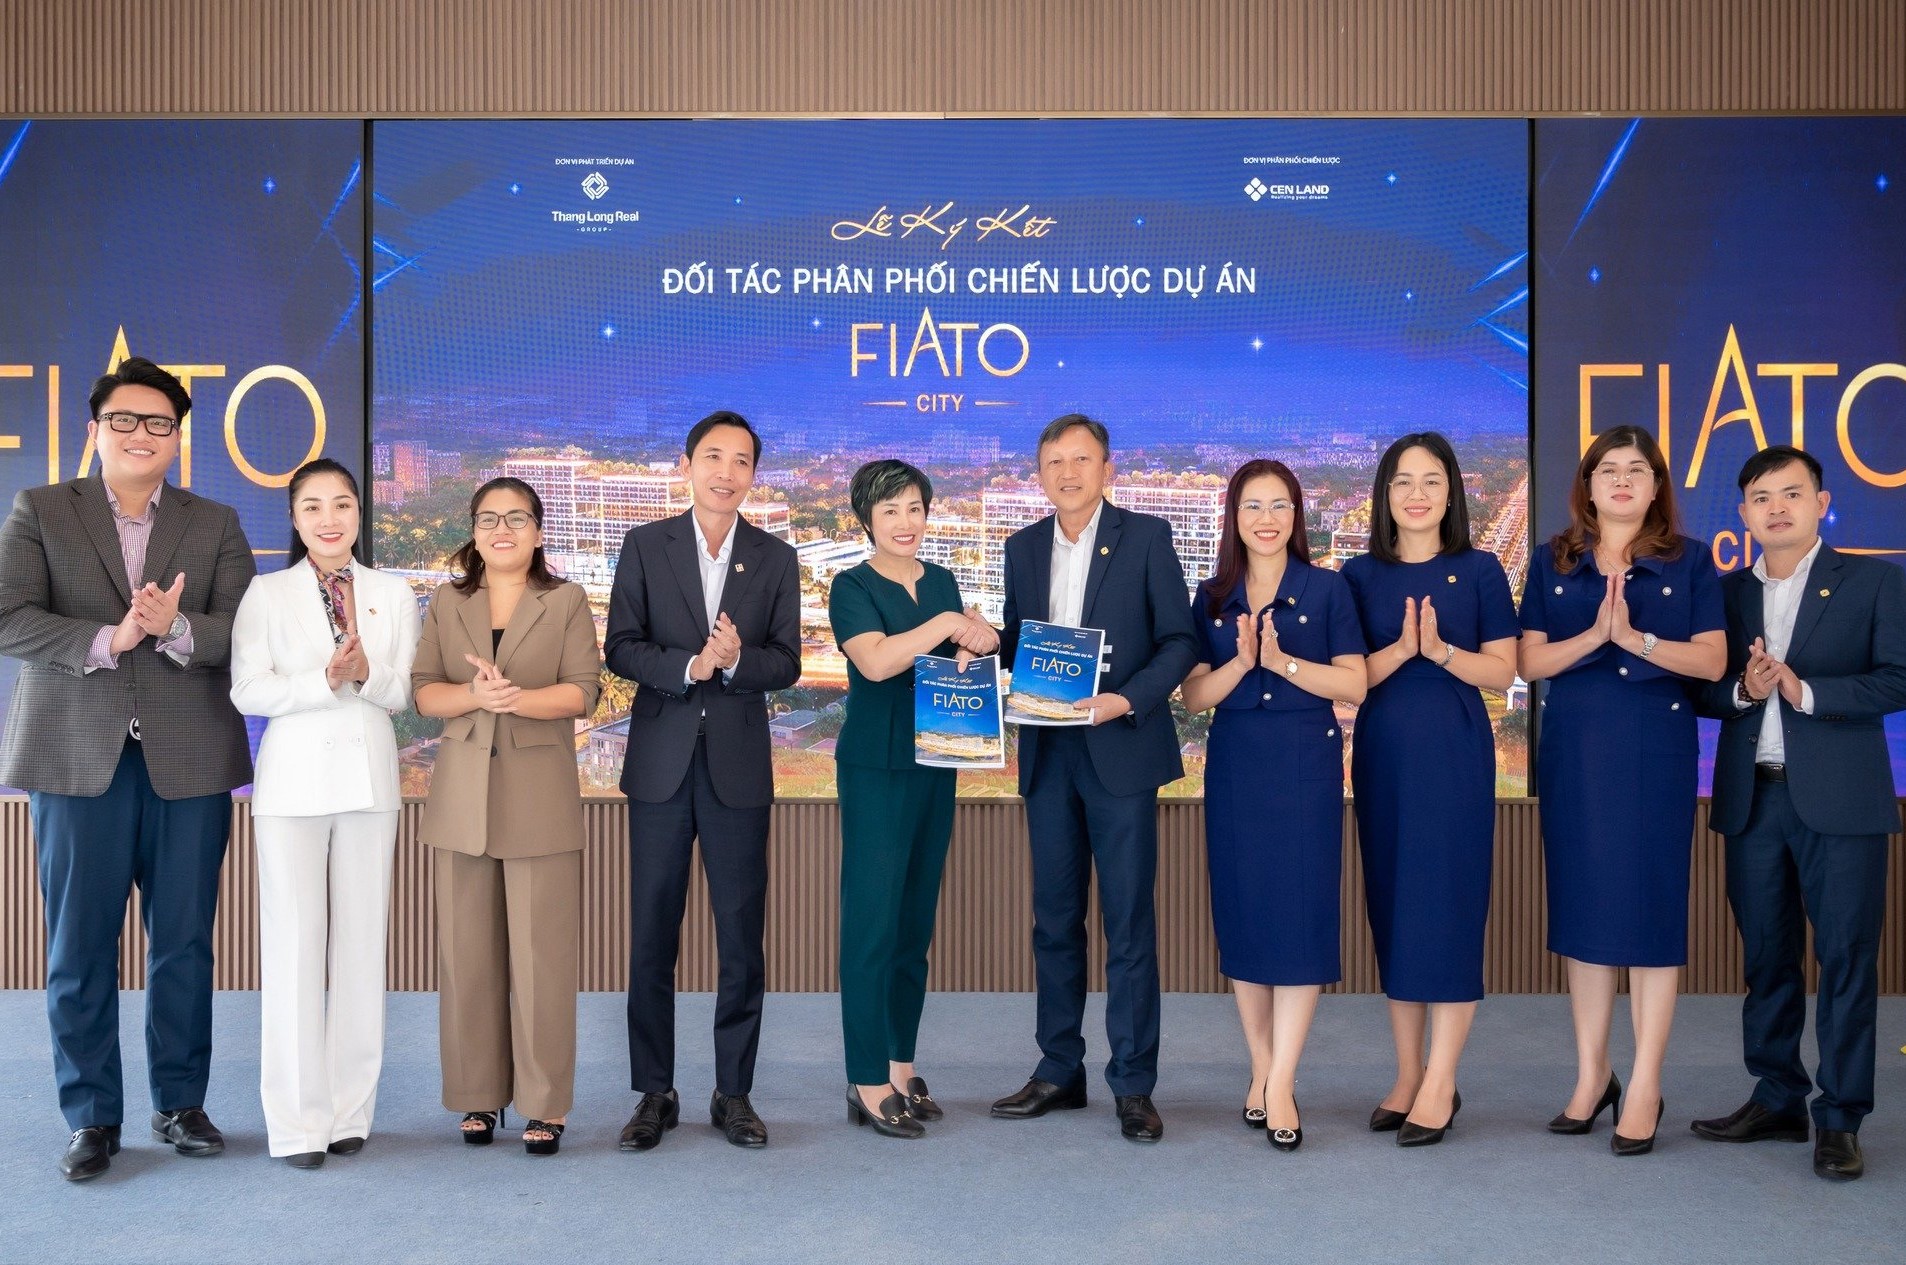 Thang Long Real Group ký kết đối tác phân phối dự án Fiato City cùng Cen Land